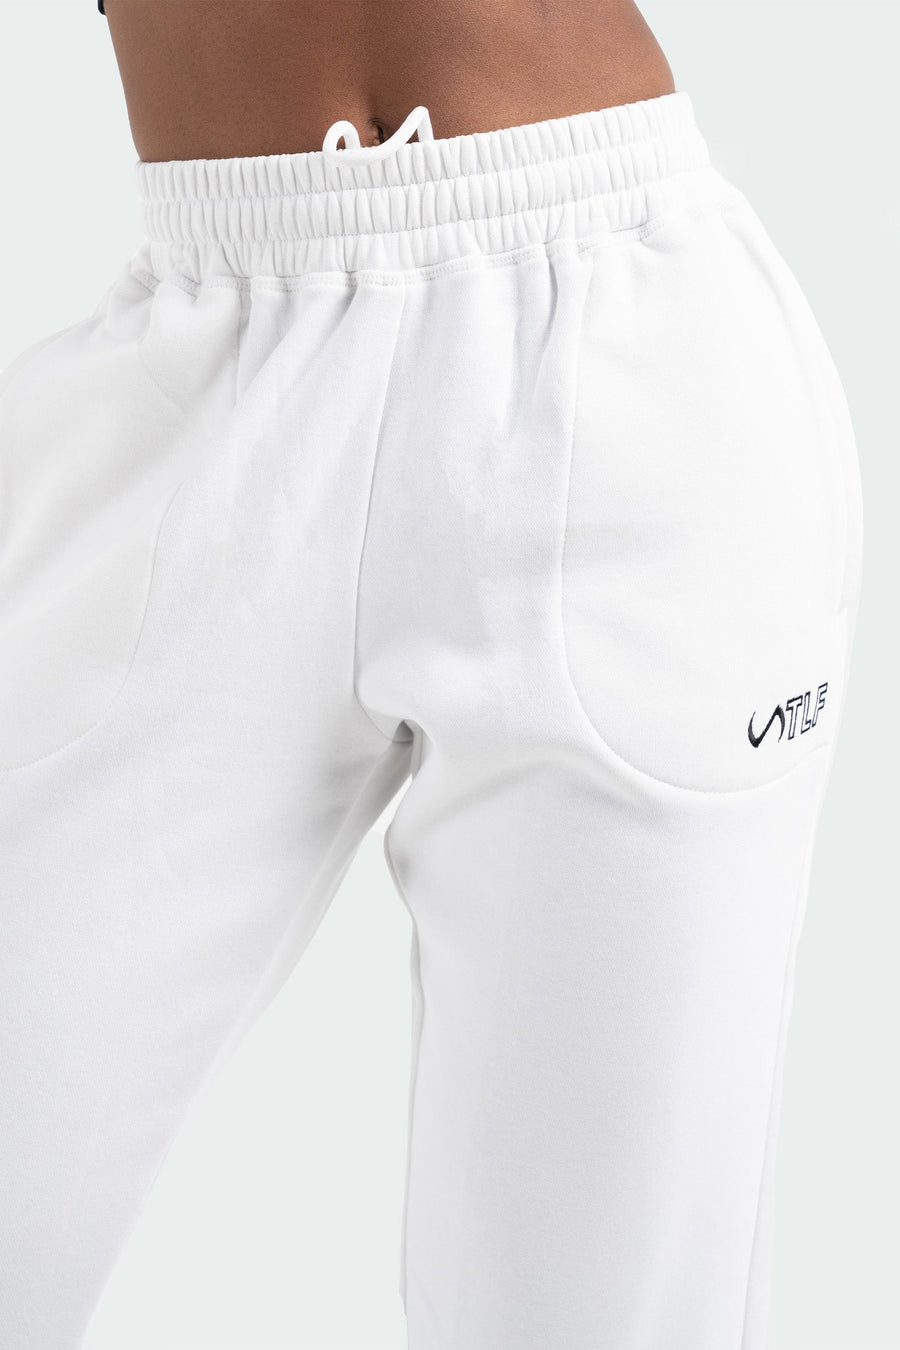 TLF Chill Fleece Oversized Sweatpants - Fleece Joggers Womens – White - 3